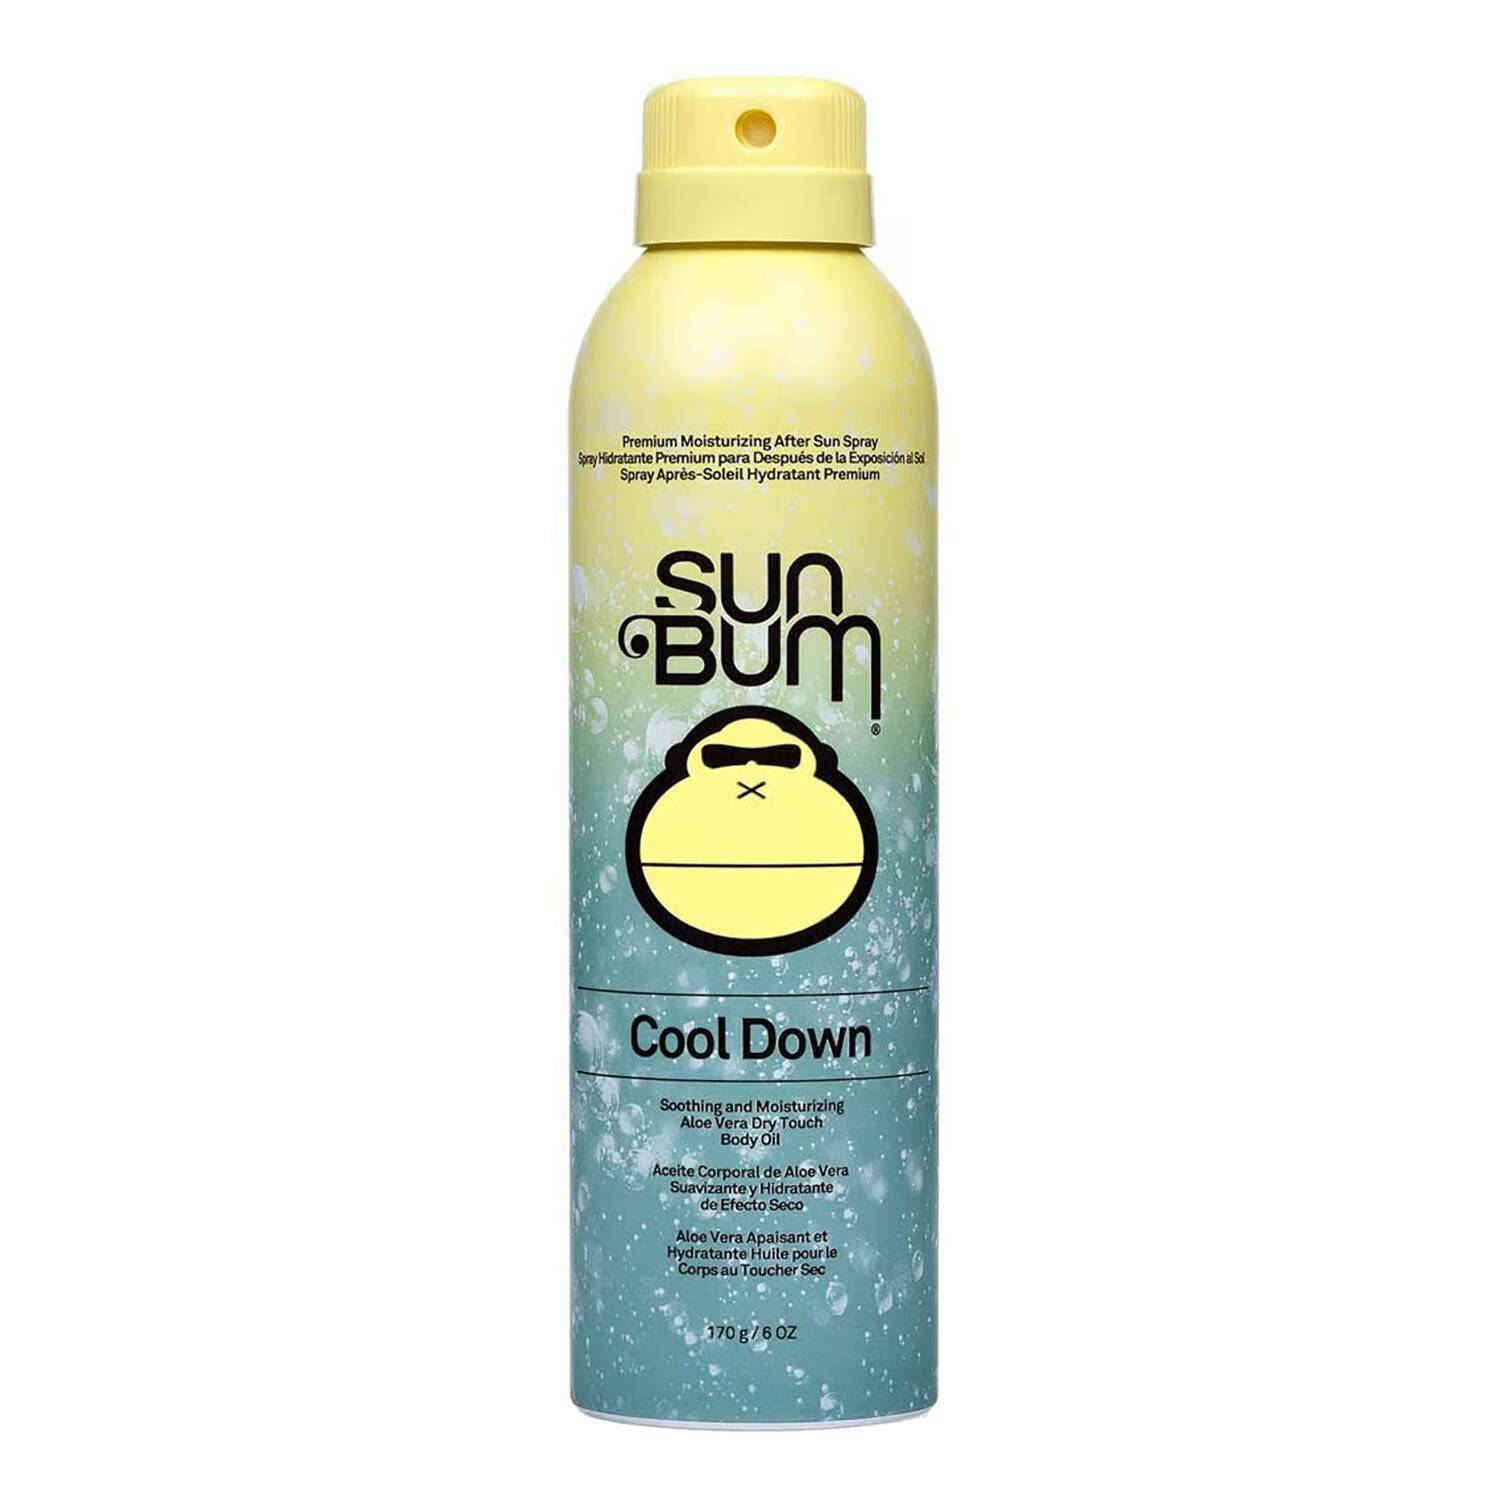 Sun Bum Cool Down After Sun Spray 170G